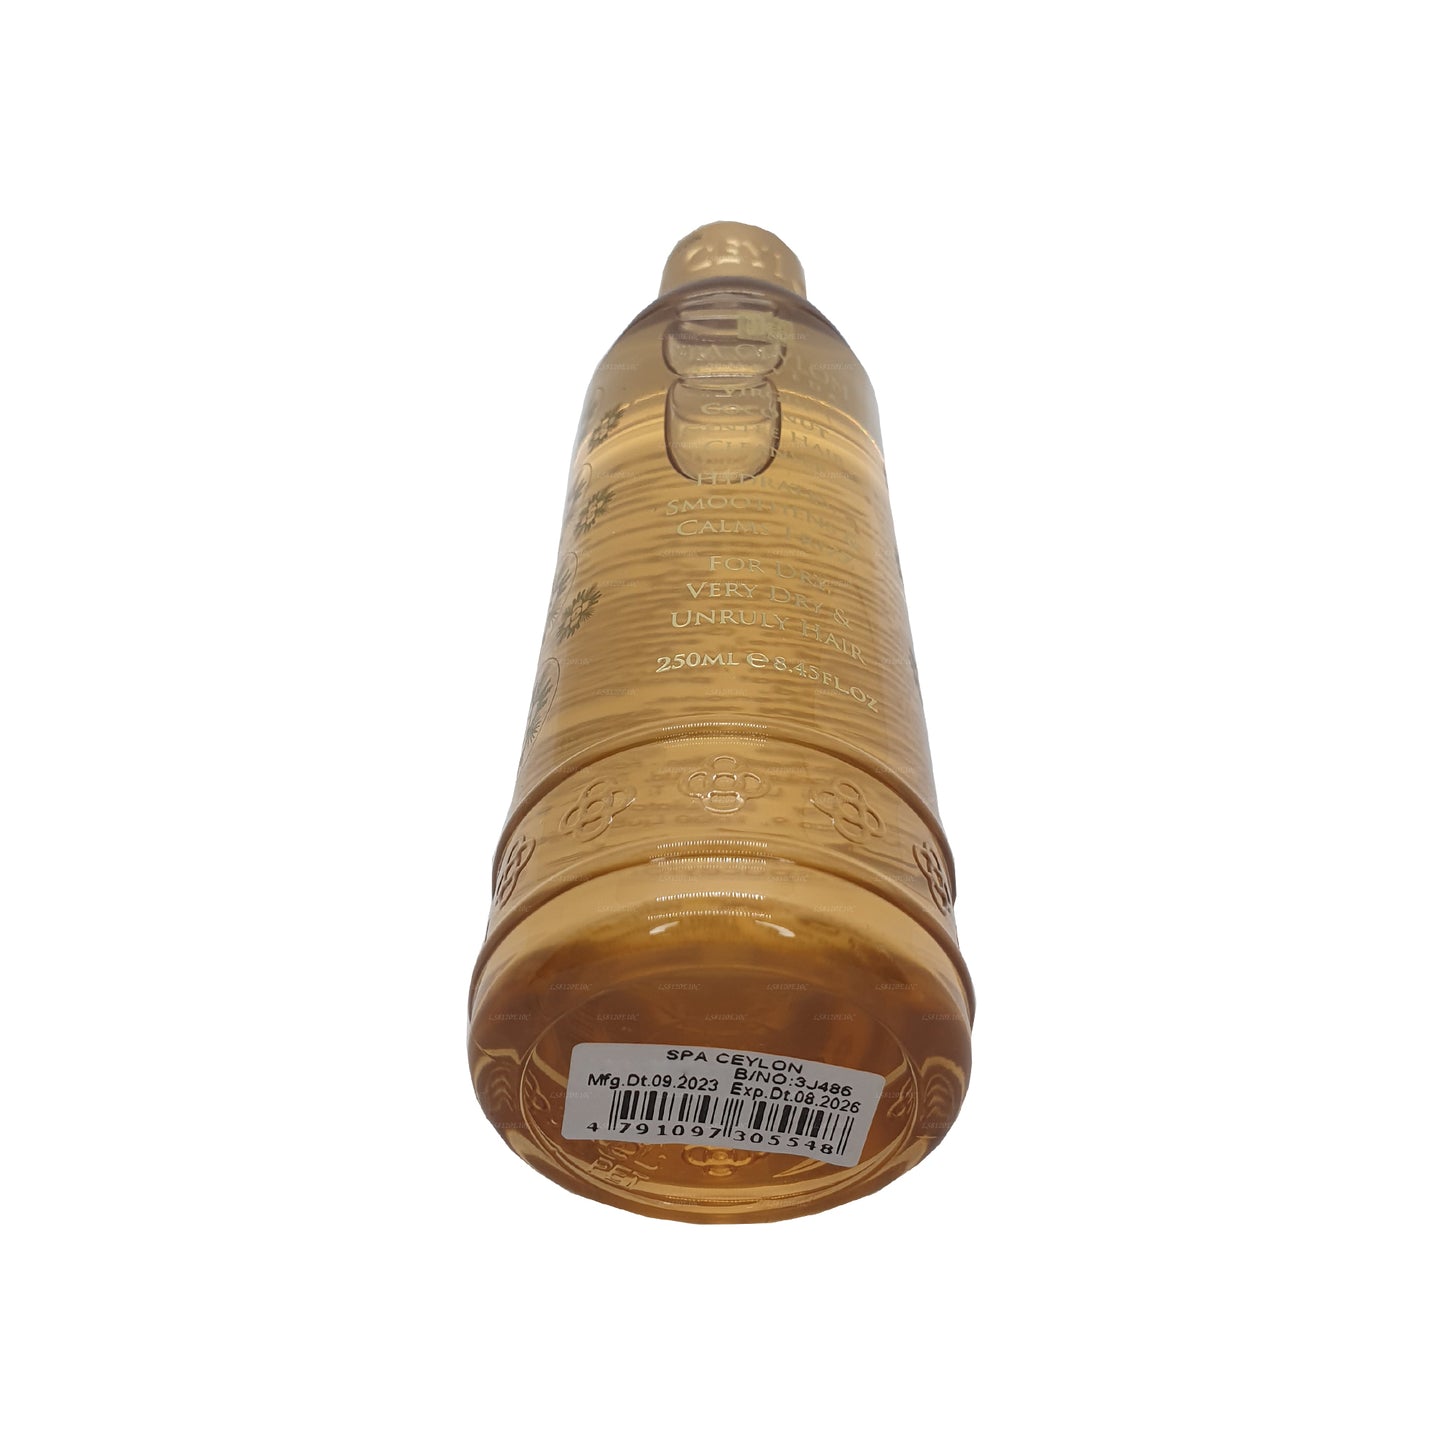 Spa Ceylon Virgin Coconut Sanfter Haarreiniger (250 ml)